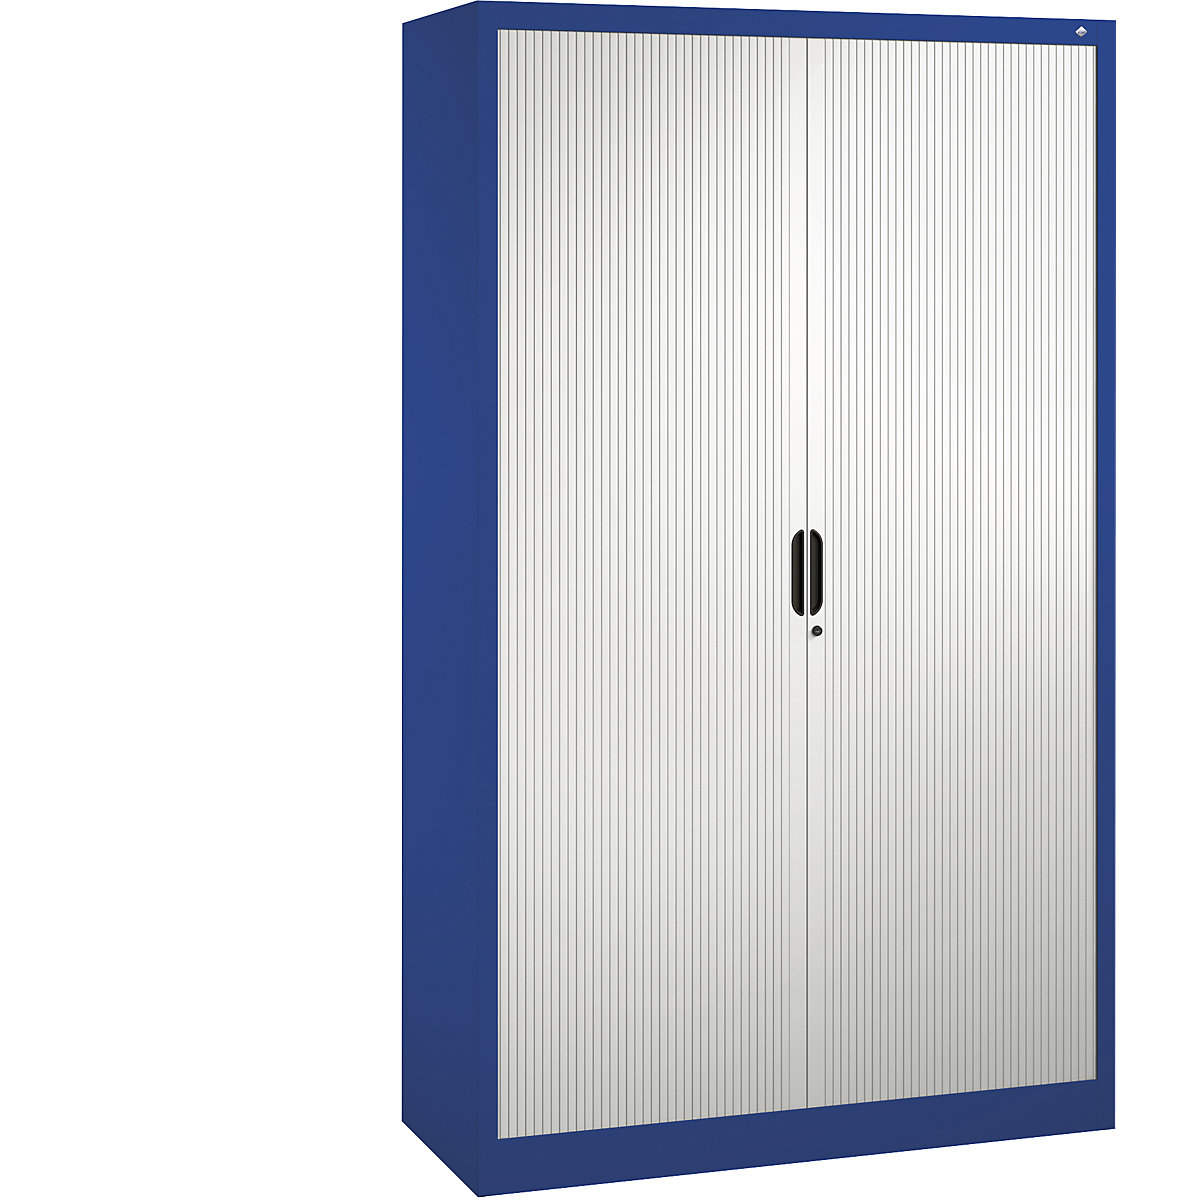 Roller shutter cupboard with horizontal shutter – C+P, HxWxD 1980 x 1200 x 420 mm, 4 shelves, 5 file heights, gentian blue / light grey-5